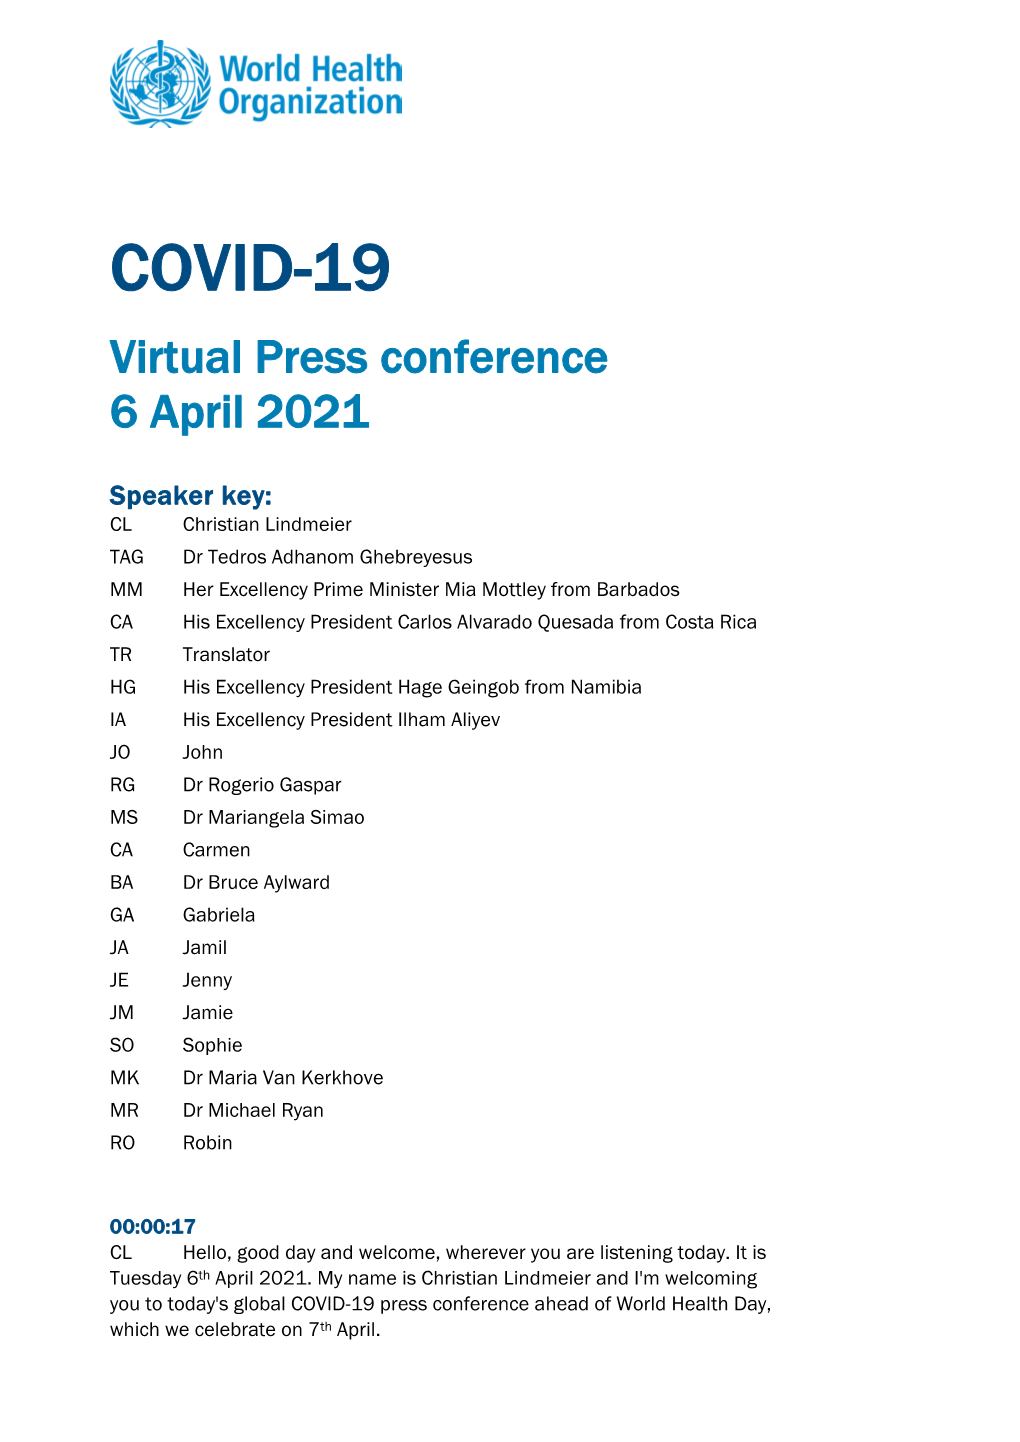 COVID-19 Virtual Press Conference 6 April 2021